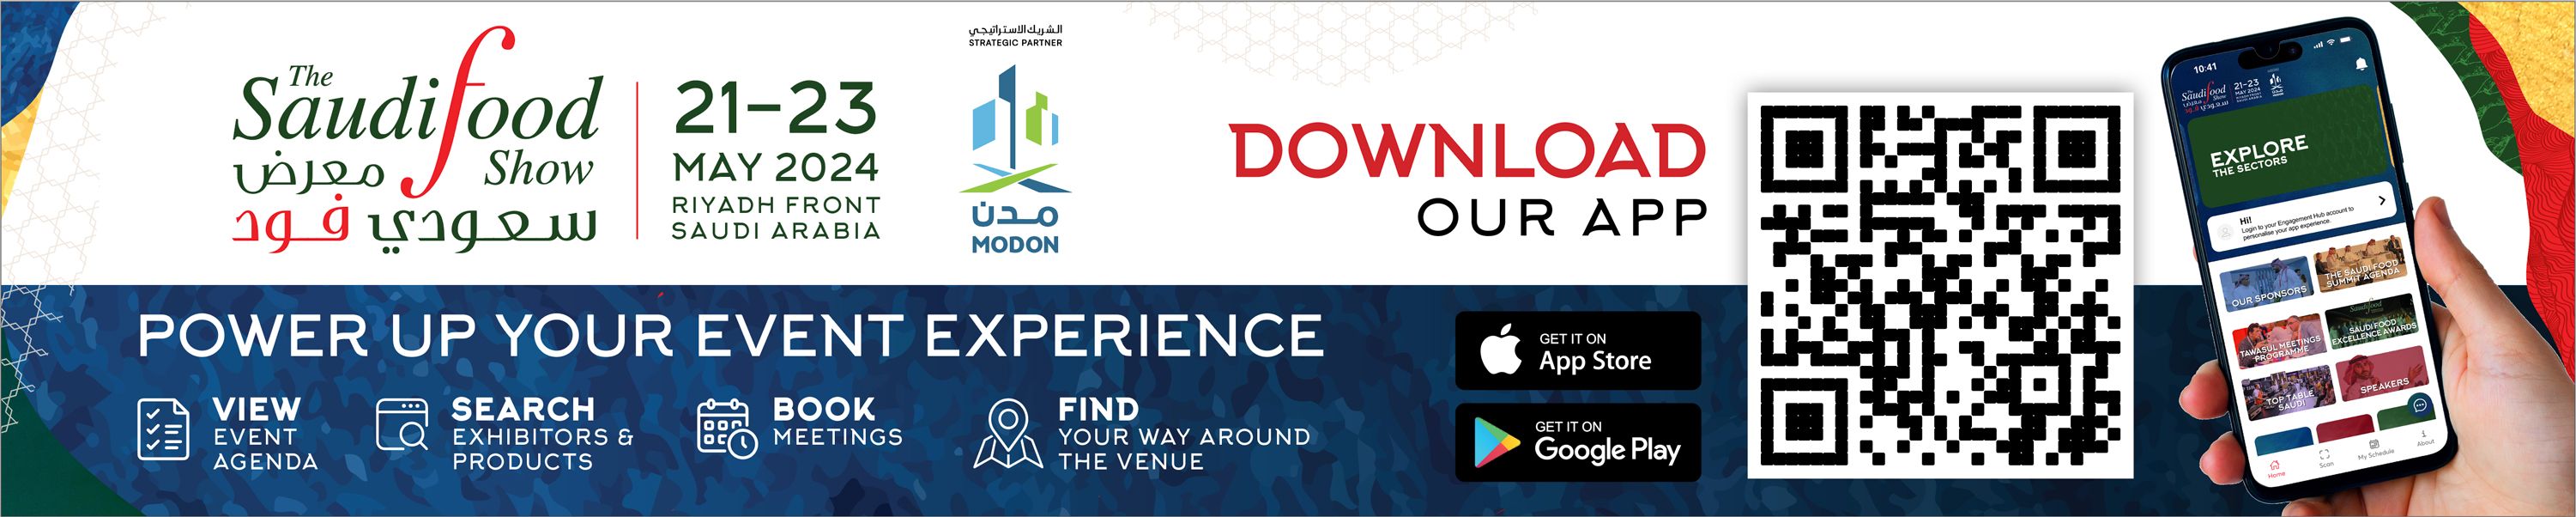 Saudi Food Show Mobile App Download